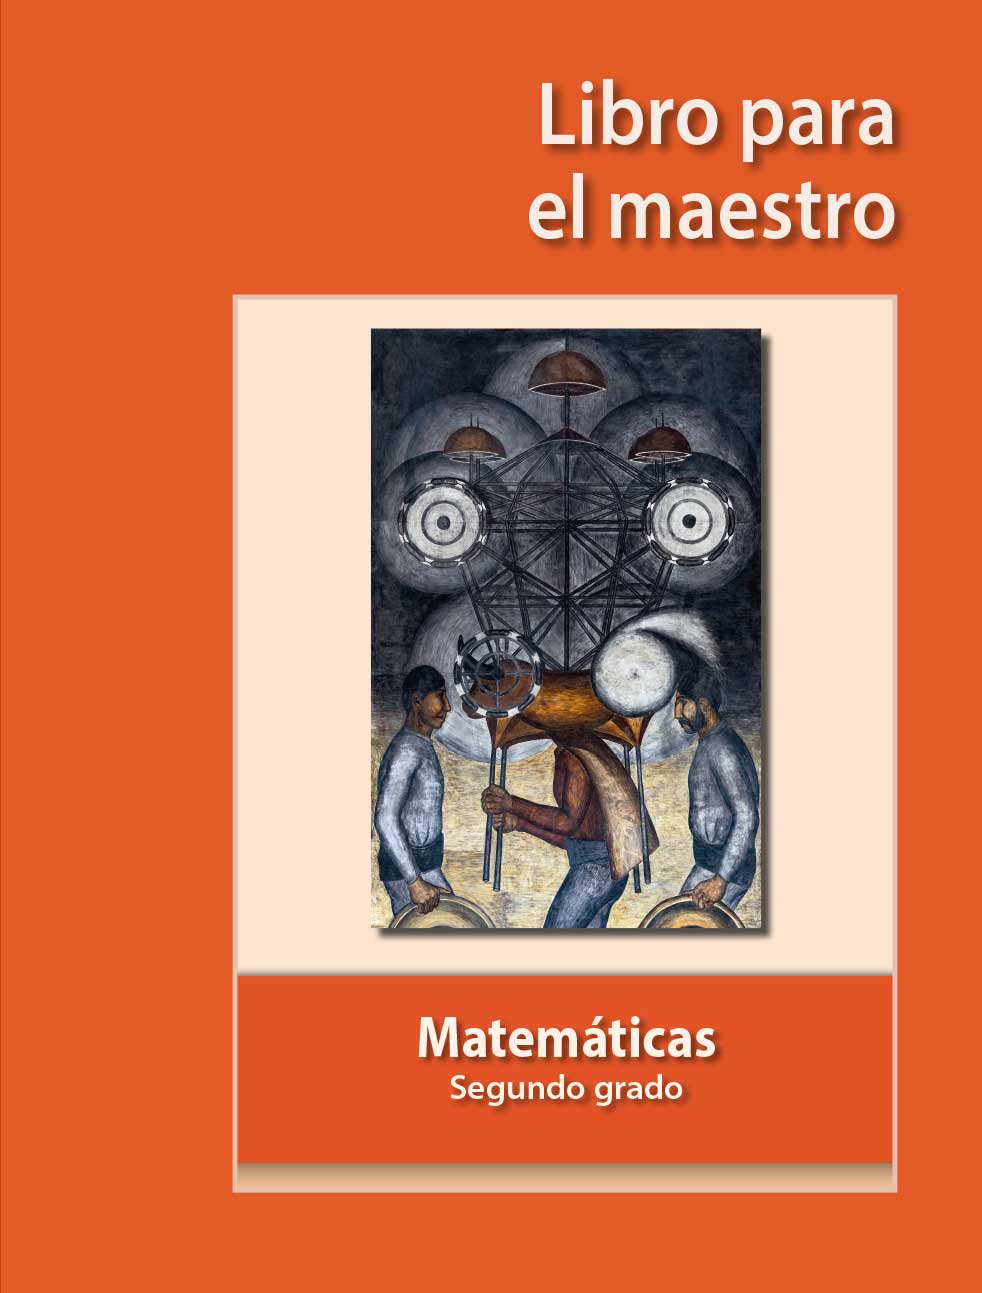 Libro Matemáticas Segundo Grado De Secundaria - Libros ...